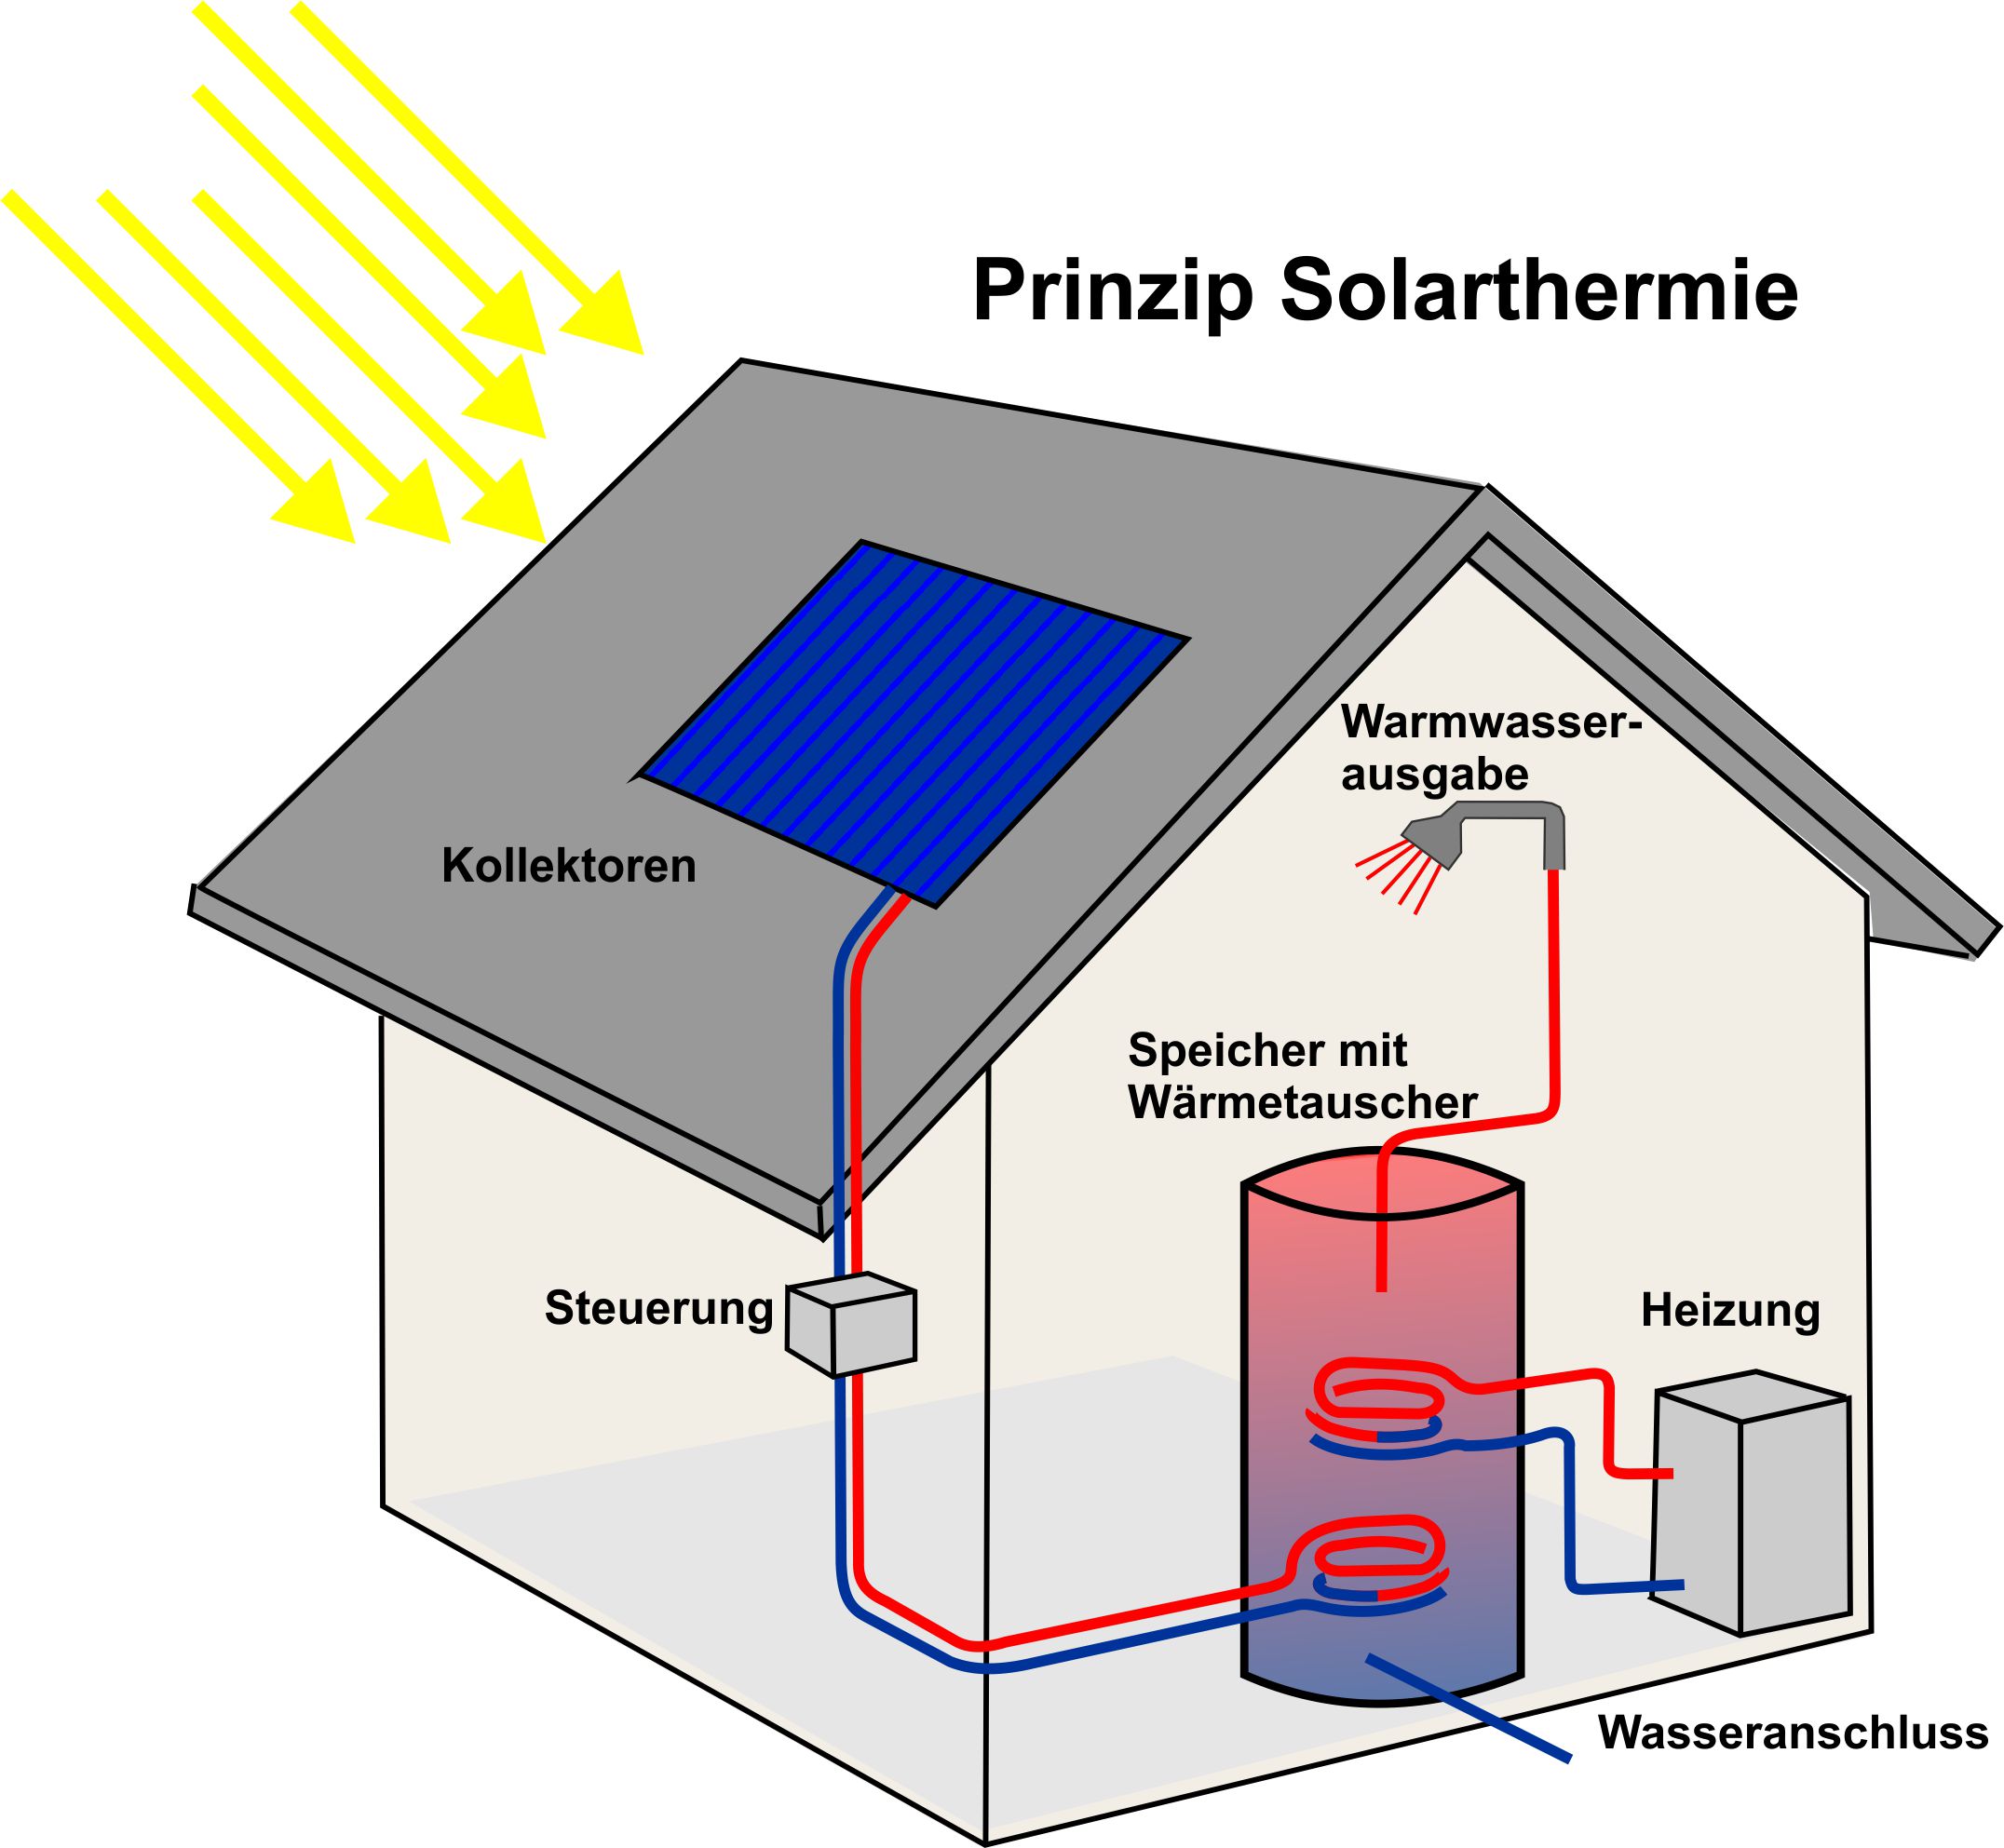 Solarthermie - Warmwasserbereitung mit Hilfe der Sonne